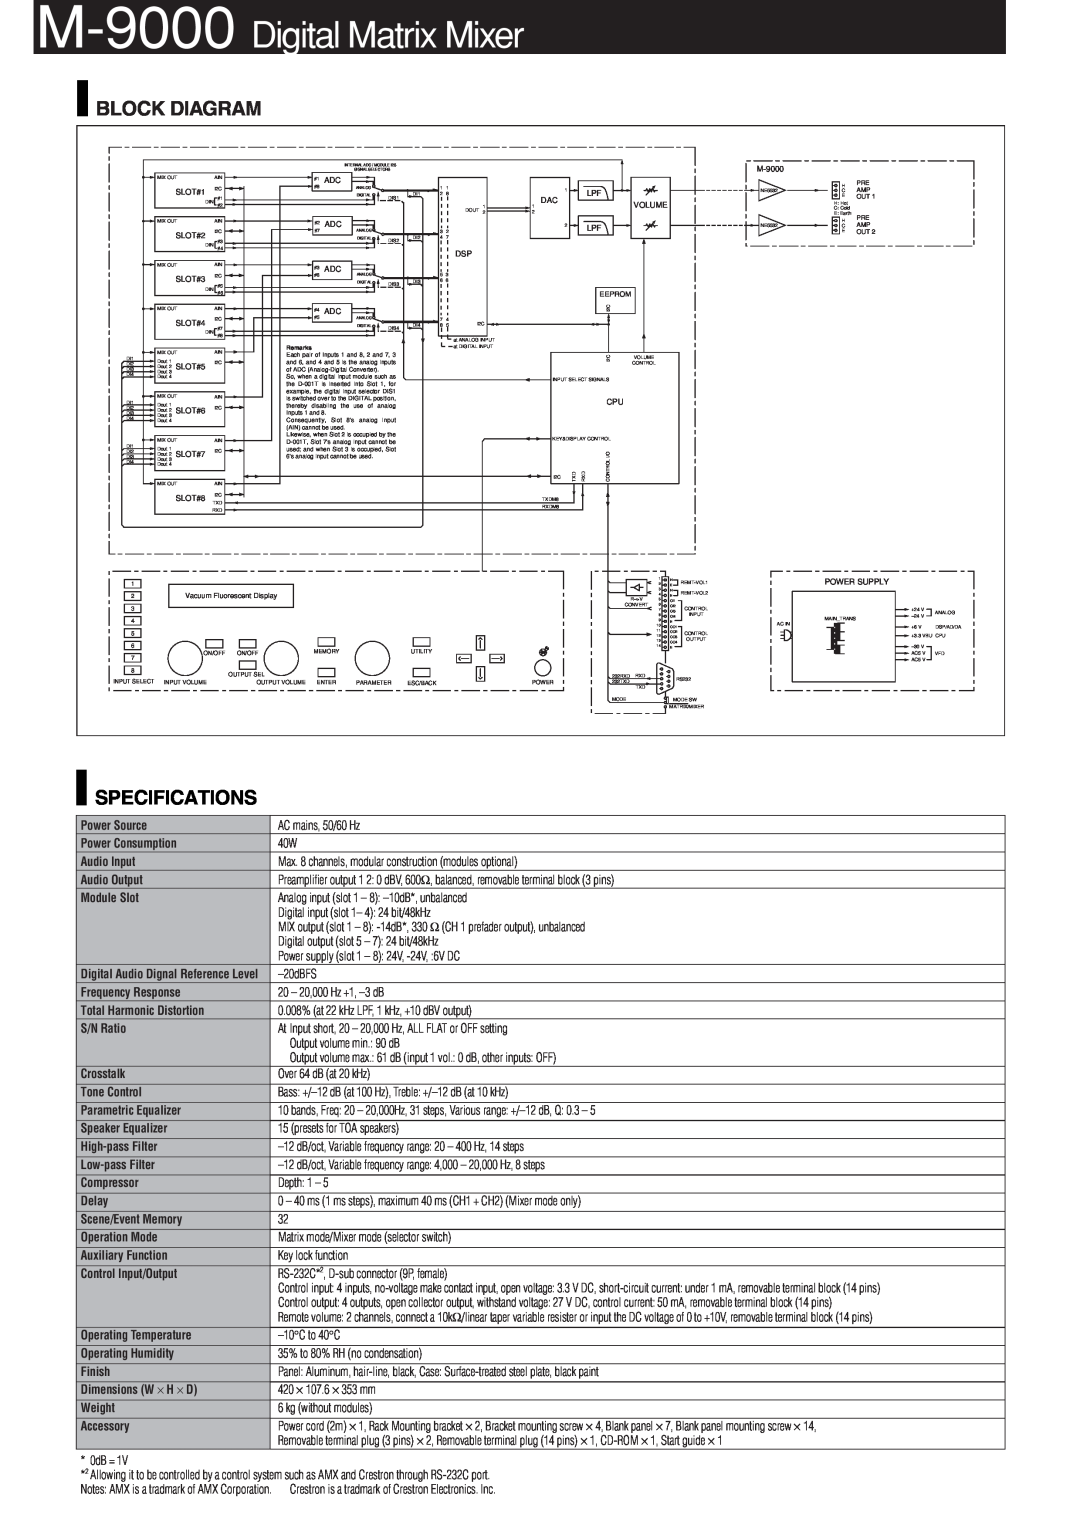 TOA Electronics manual M-9000 Digital Matrix Mixer, Specifications, Block Diagram 